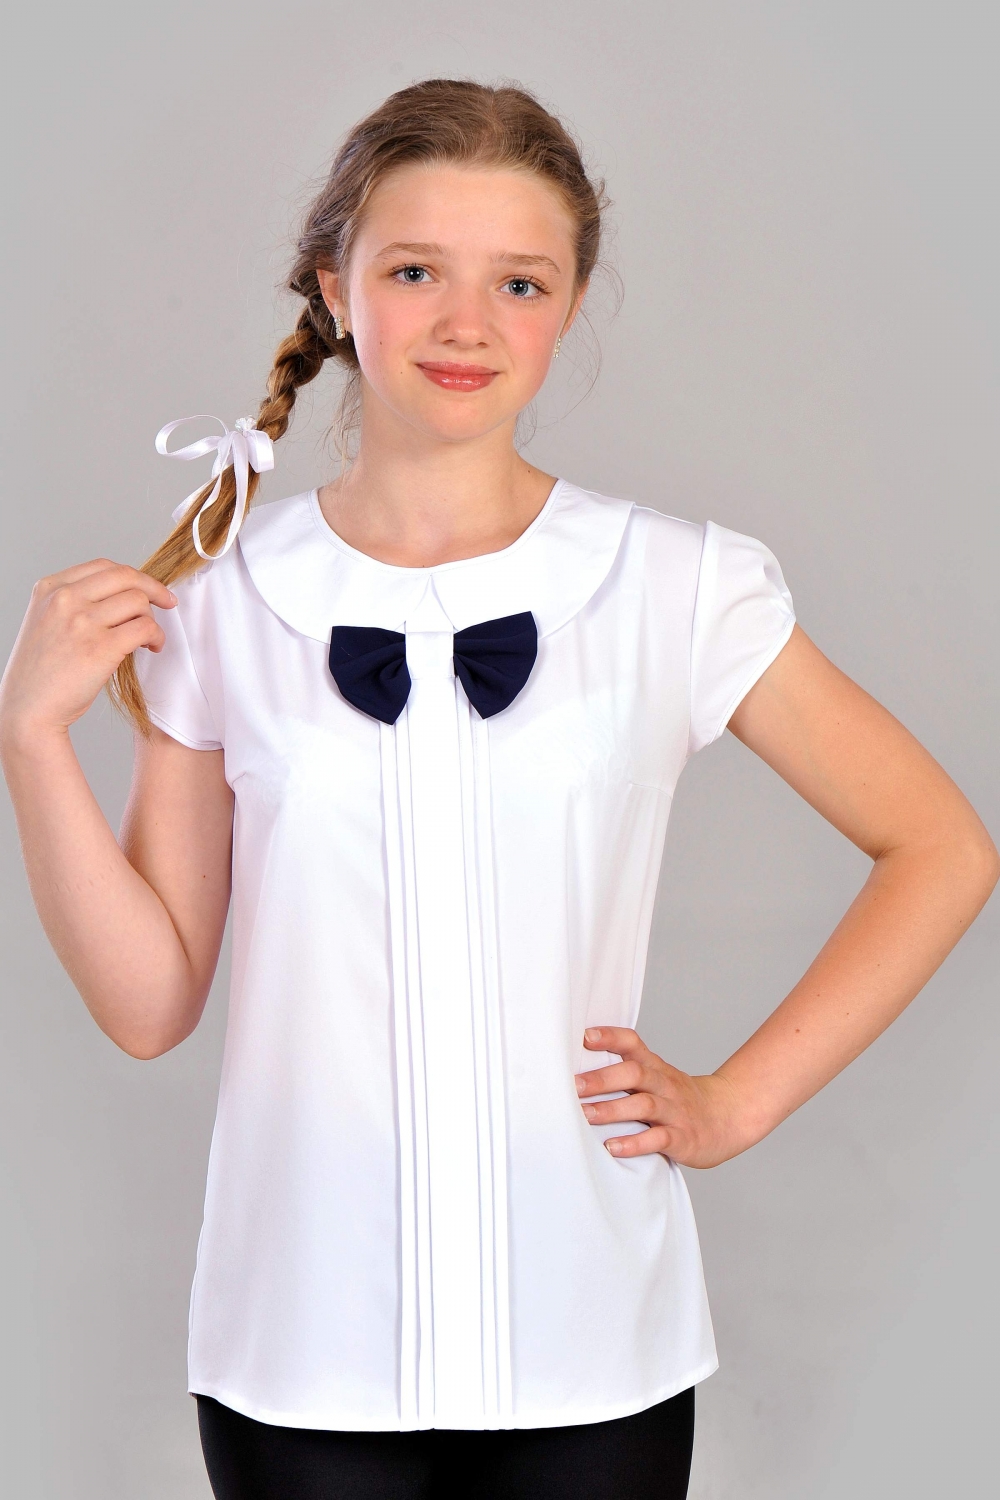 Ассиметричная подростковая блузка для школы